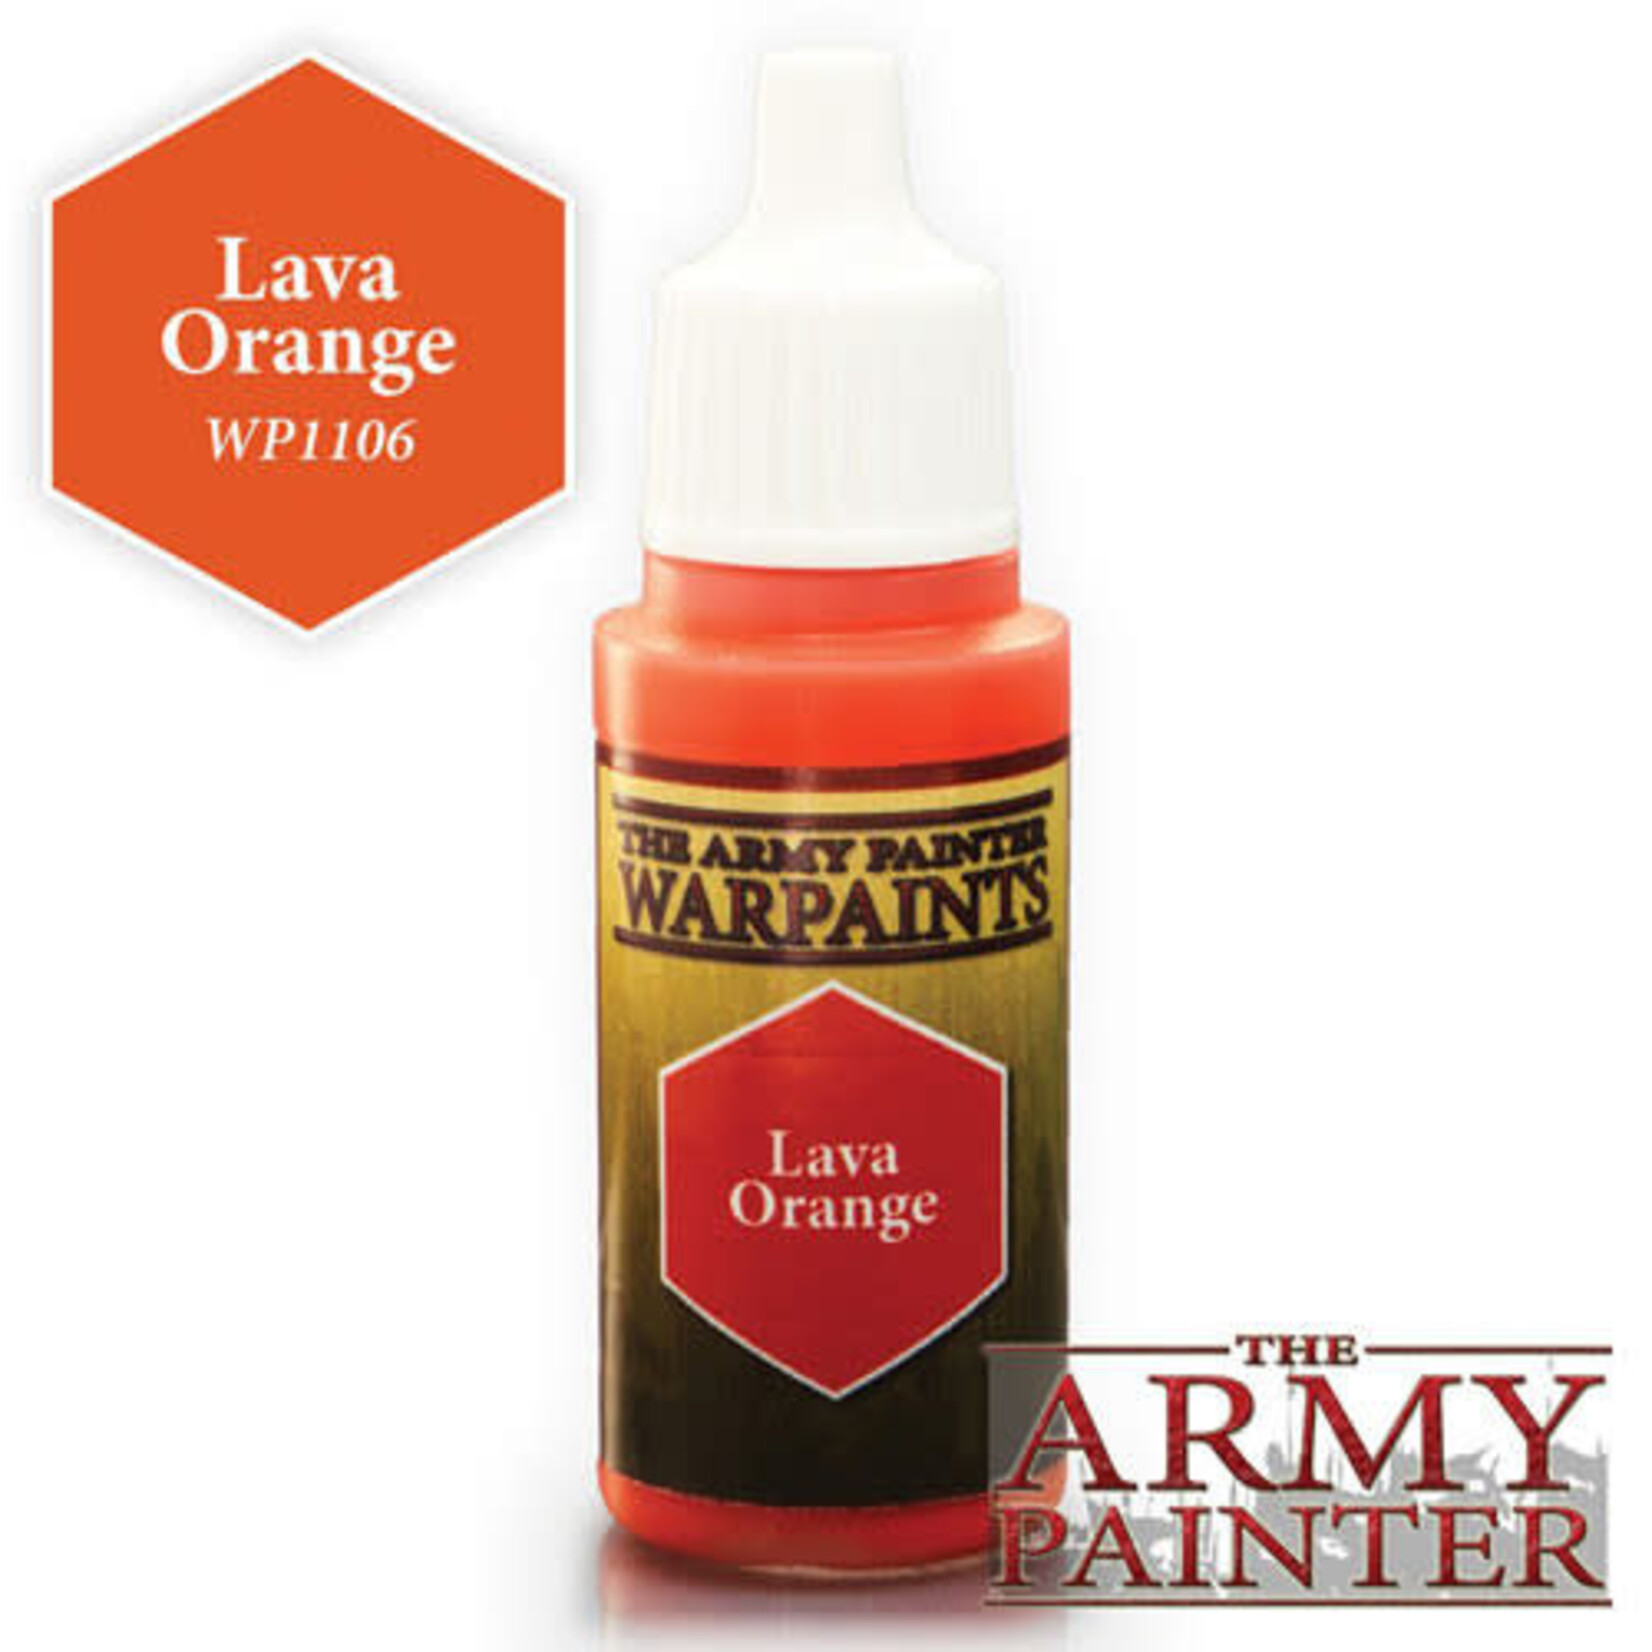 The Army Painter Warpaints: Lava Orange 18ml